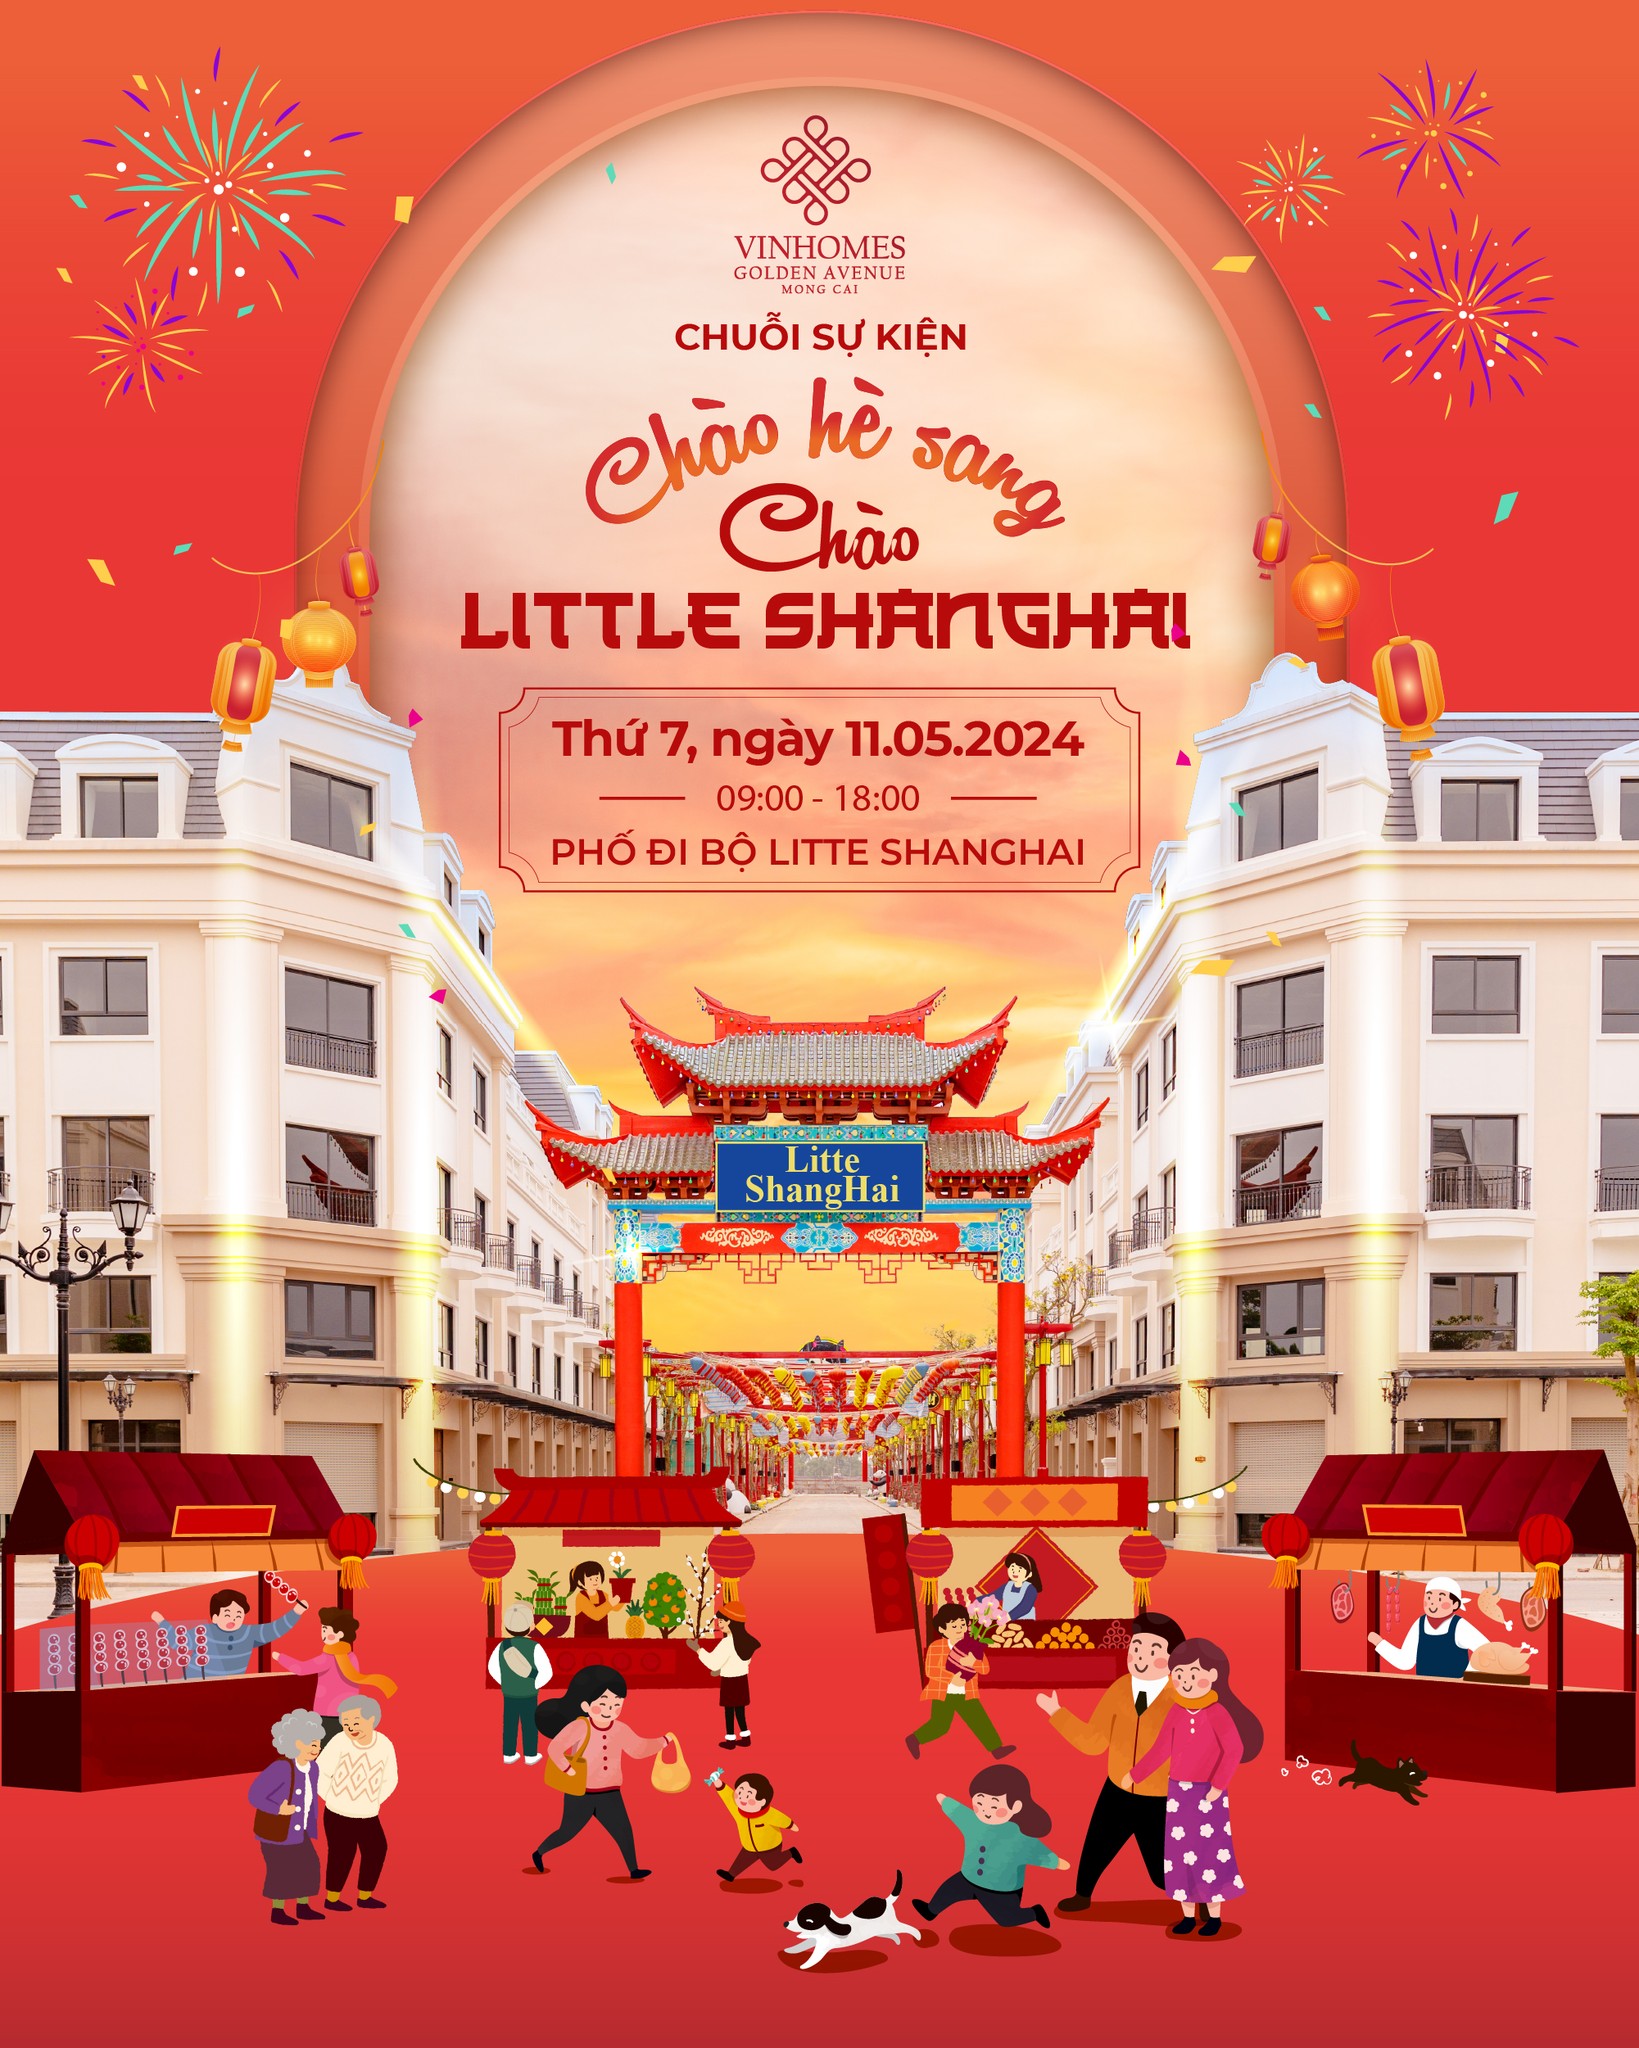 “Chào hè sang - Chào Little Shanghai” sẽ khởi động chuỗi hoạt động hè sôi động tại Vinhomes Golden Avenue. Ảnh: Ngọc Quỳnh